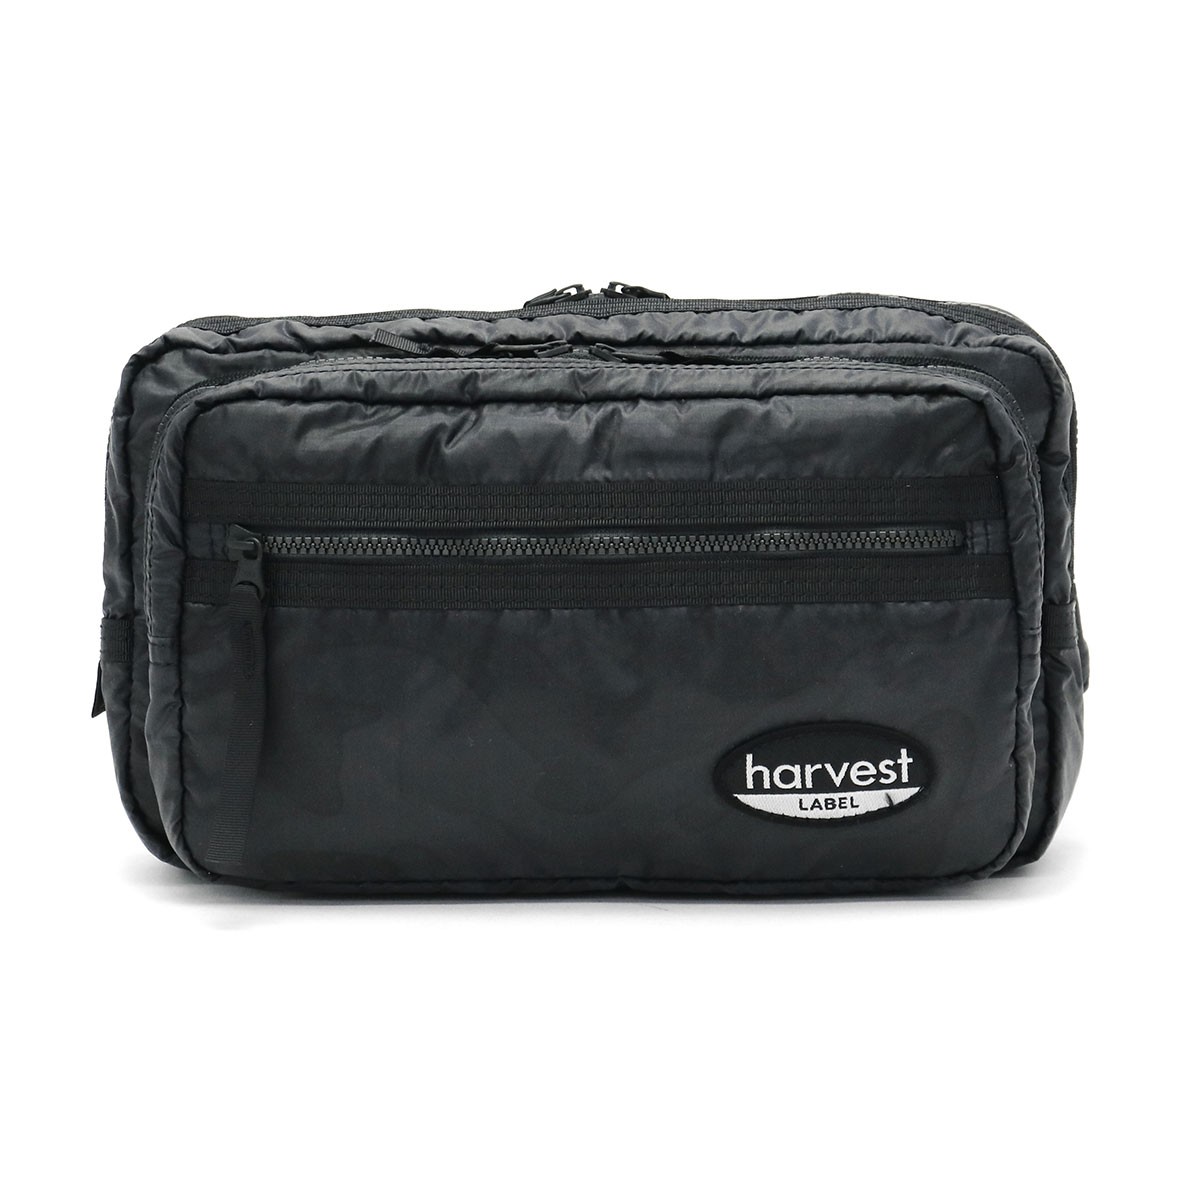 ハーヴェストレーベル Label ボディバッグ Harvest Neo Ht 0152 メンズ ウエストバッグ Harvest Har Ht 0152 ギャレリア 最大28 獲得 10 15限定 ハーベストレーベル Paratrooper ボディバッグ メンズ Bag Luggage